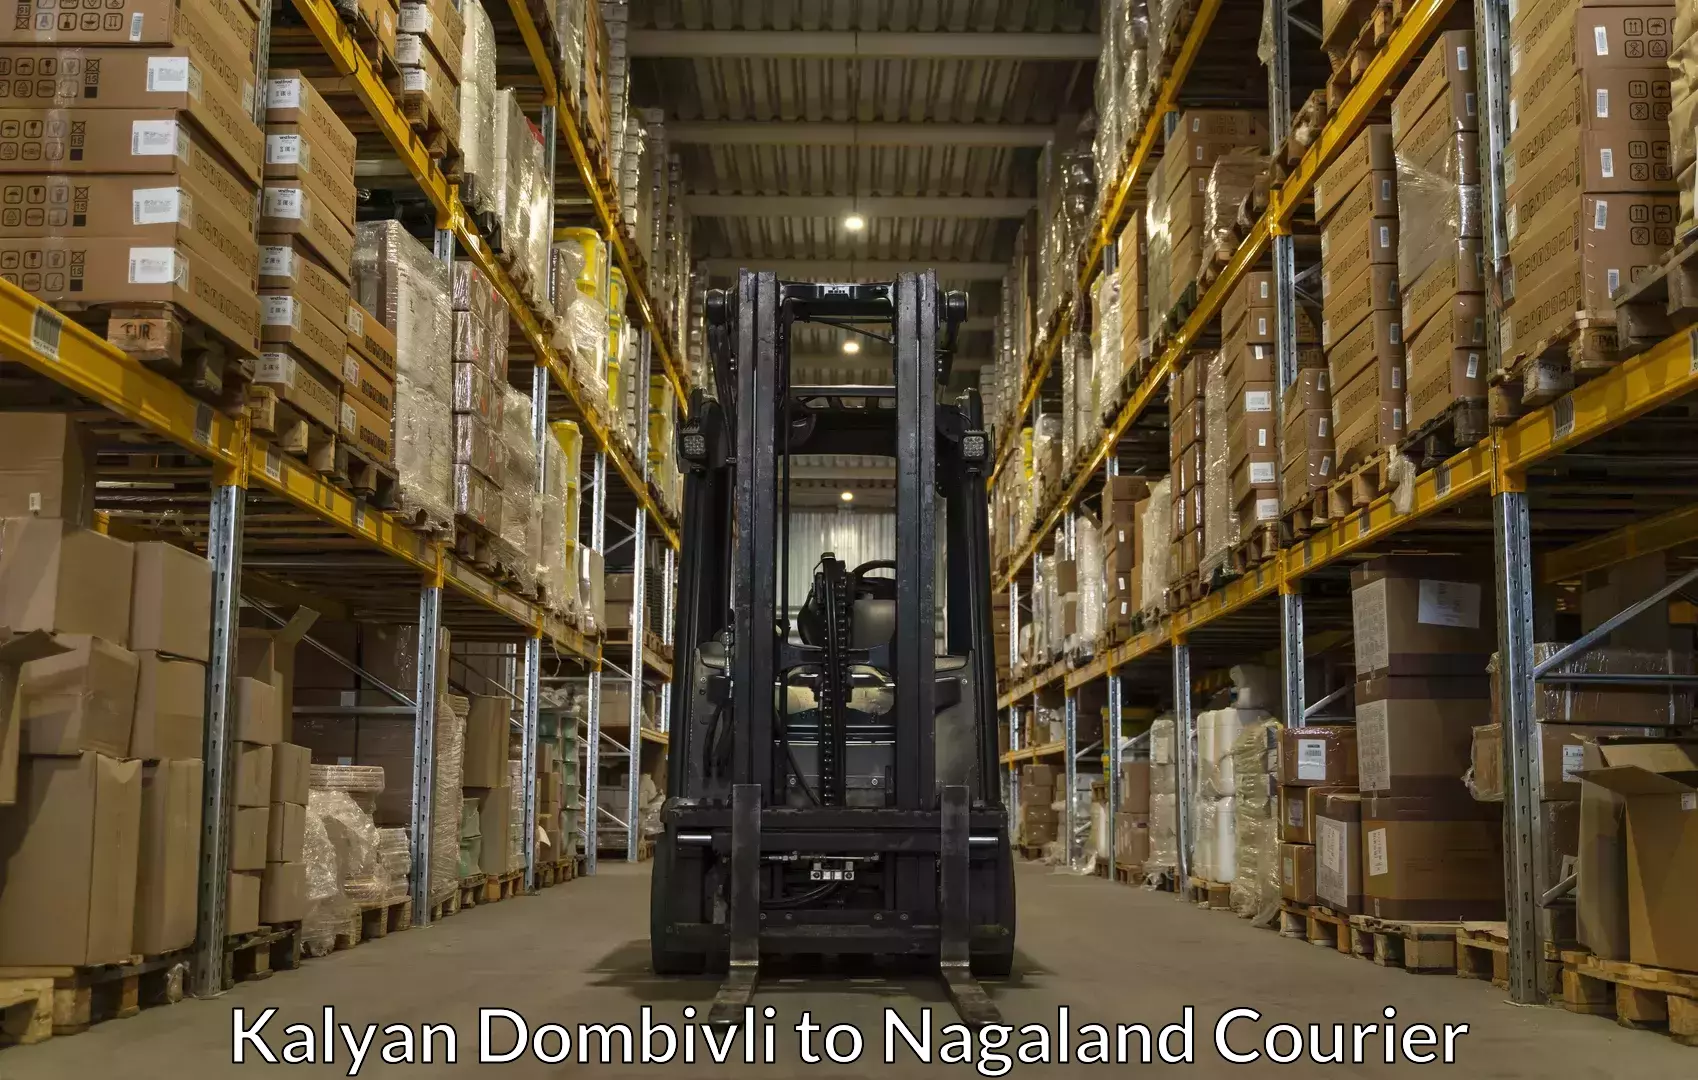 Luggage shipment strategy Kalyan Dombivli to Nagaland